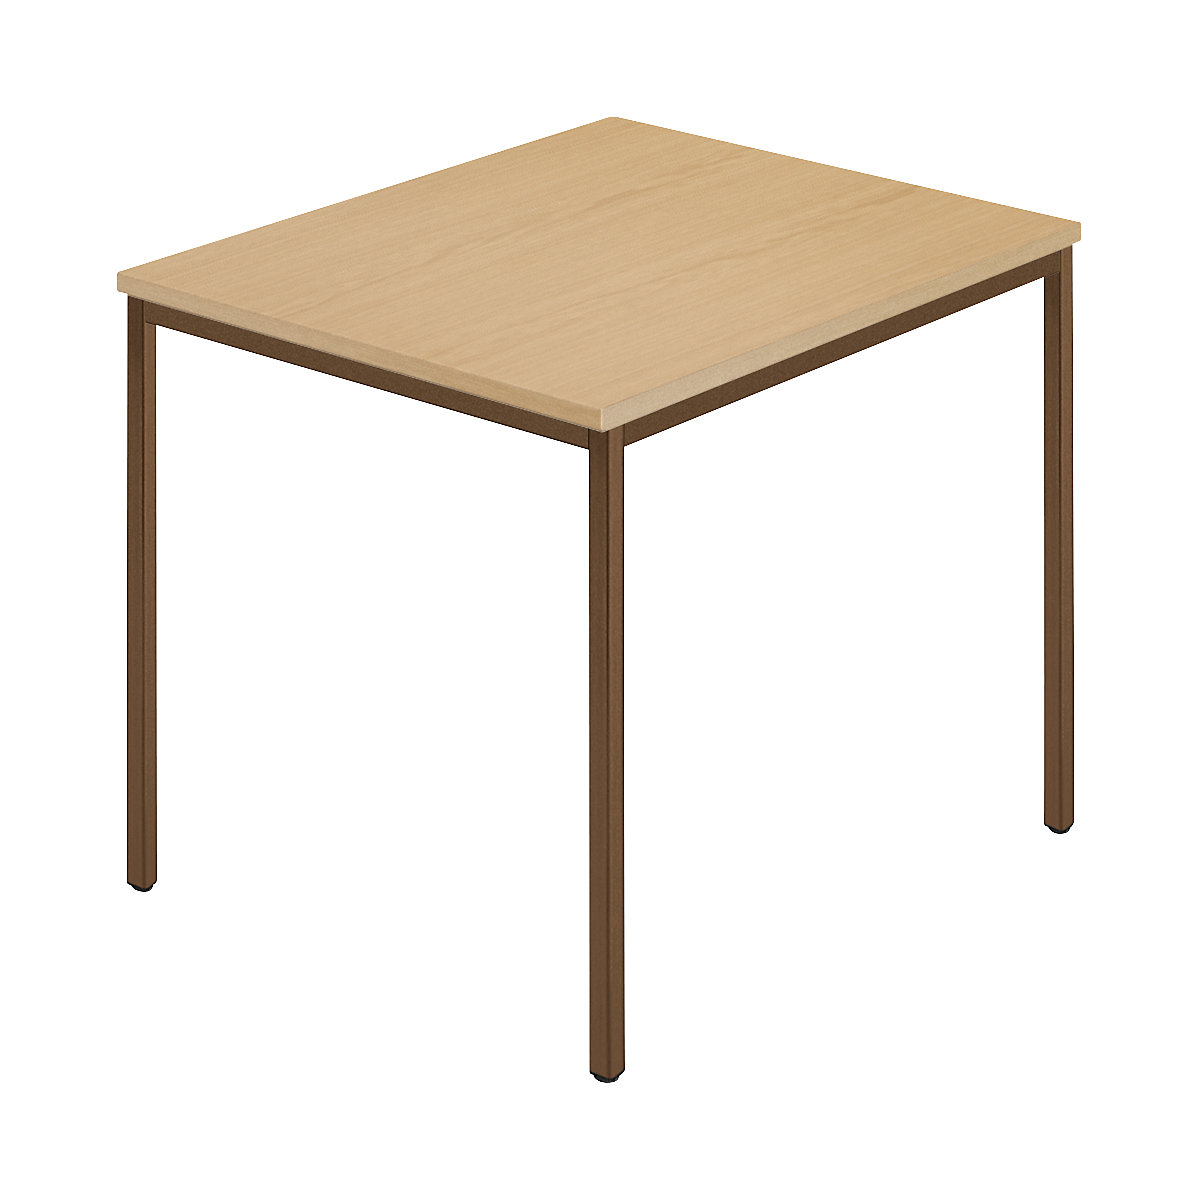 Rectangular table, coated rectangular tubing, WxD 800 x 800 mm, beech natural / brown-5